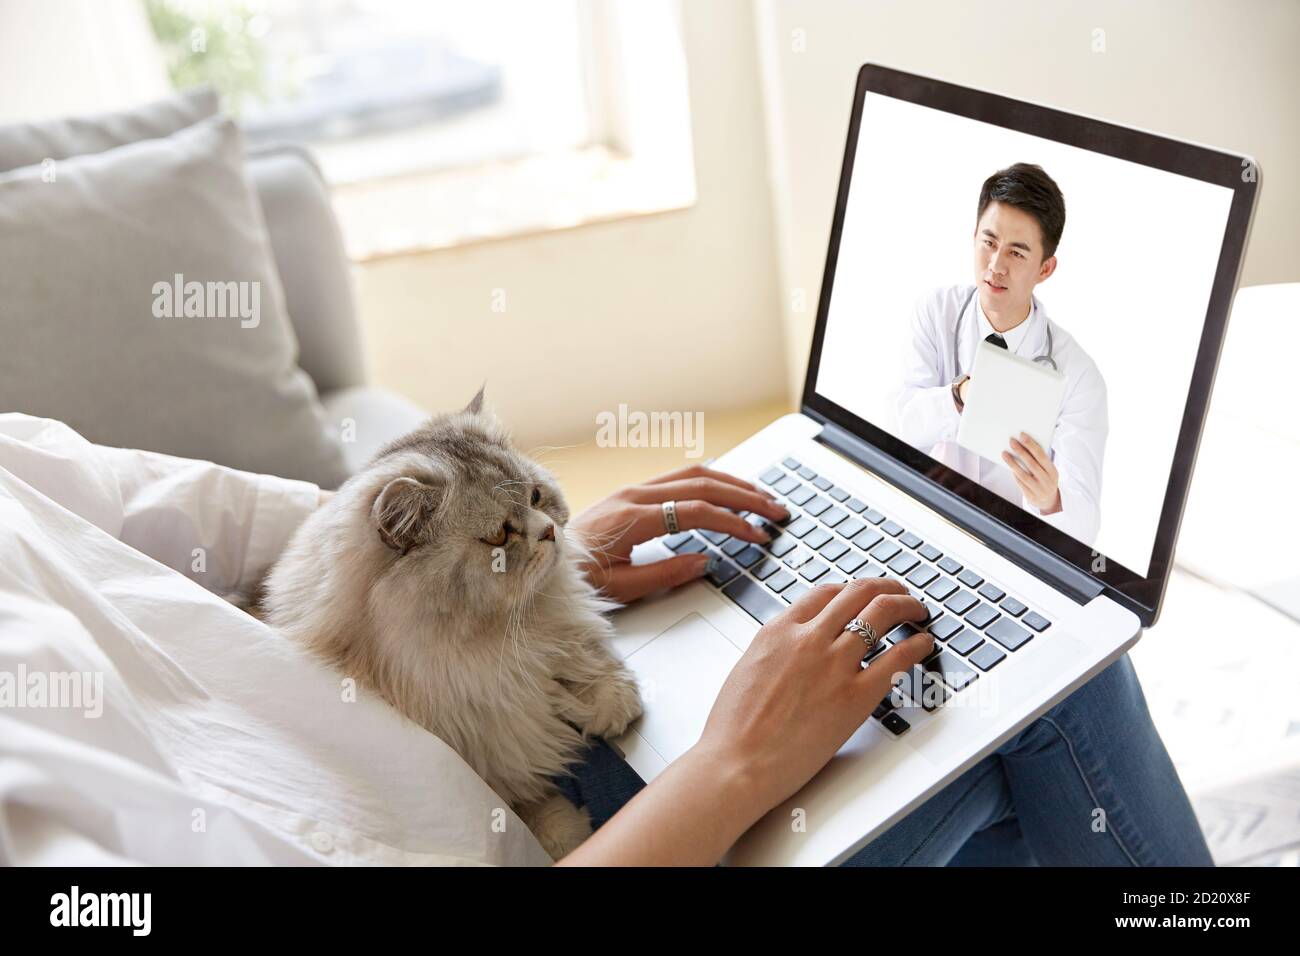 Junge asiatische Frau zu Hause mit Haustier Katze Beratung Ein Arzt per Videoanruf mit Laptop-Computer Stockfoto